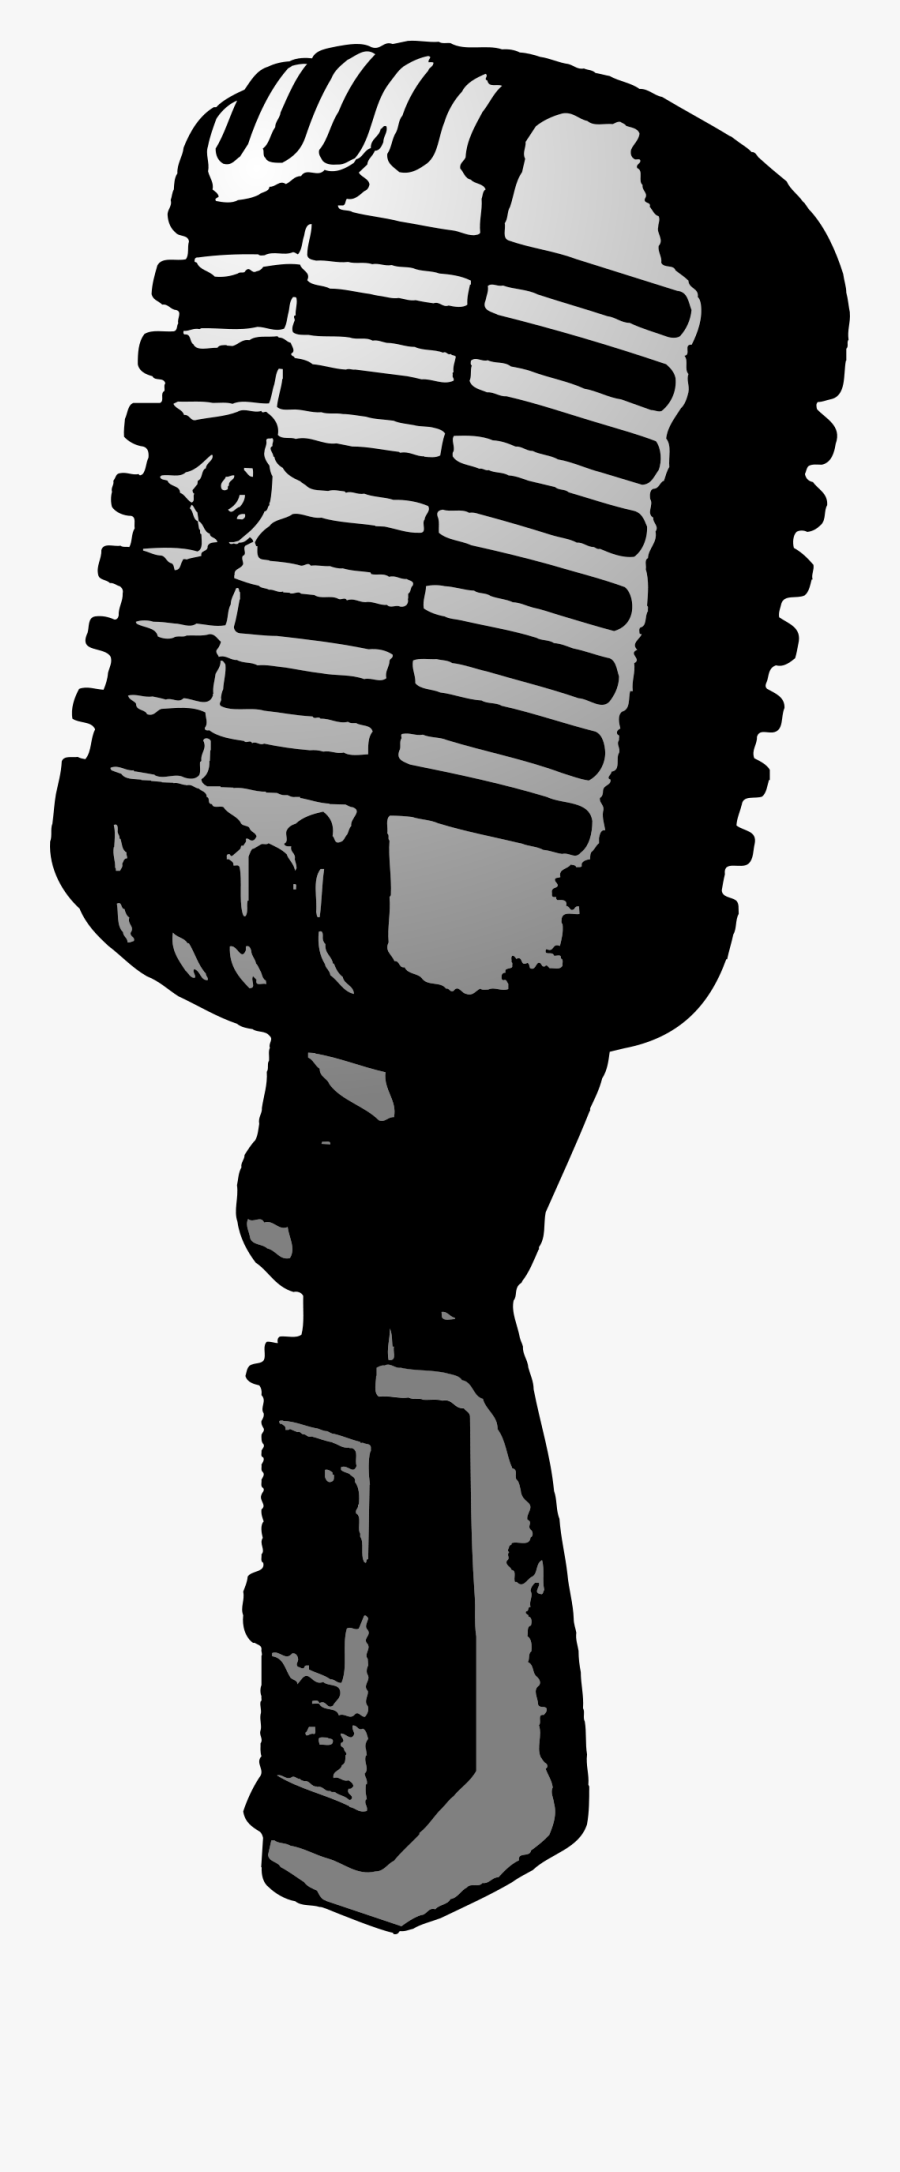 Old Microphone Clipart Clipartix - Public Domain Images Microphone, Transparent Clipart